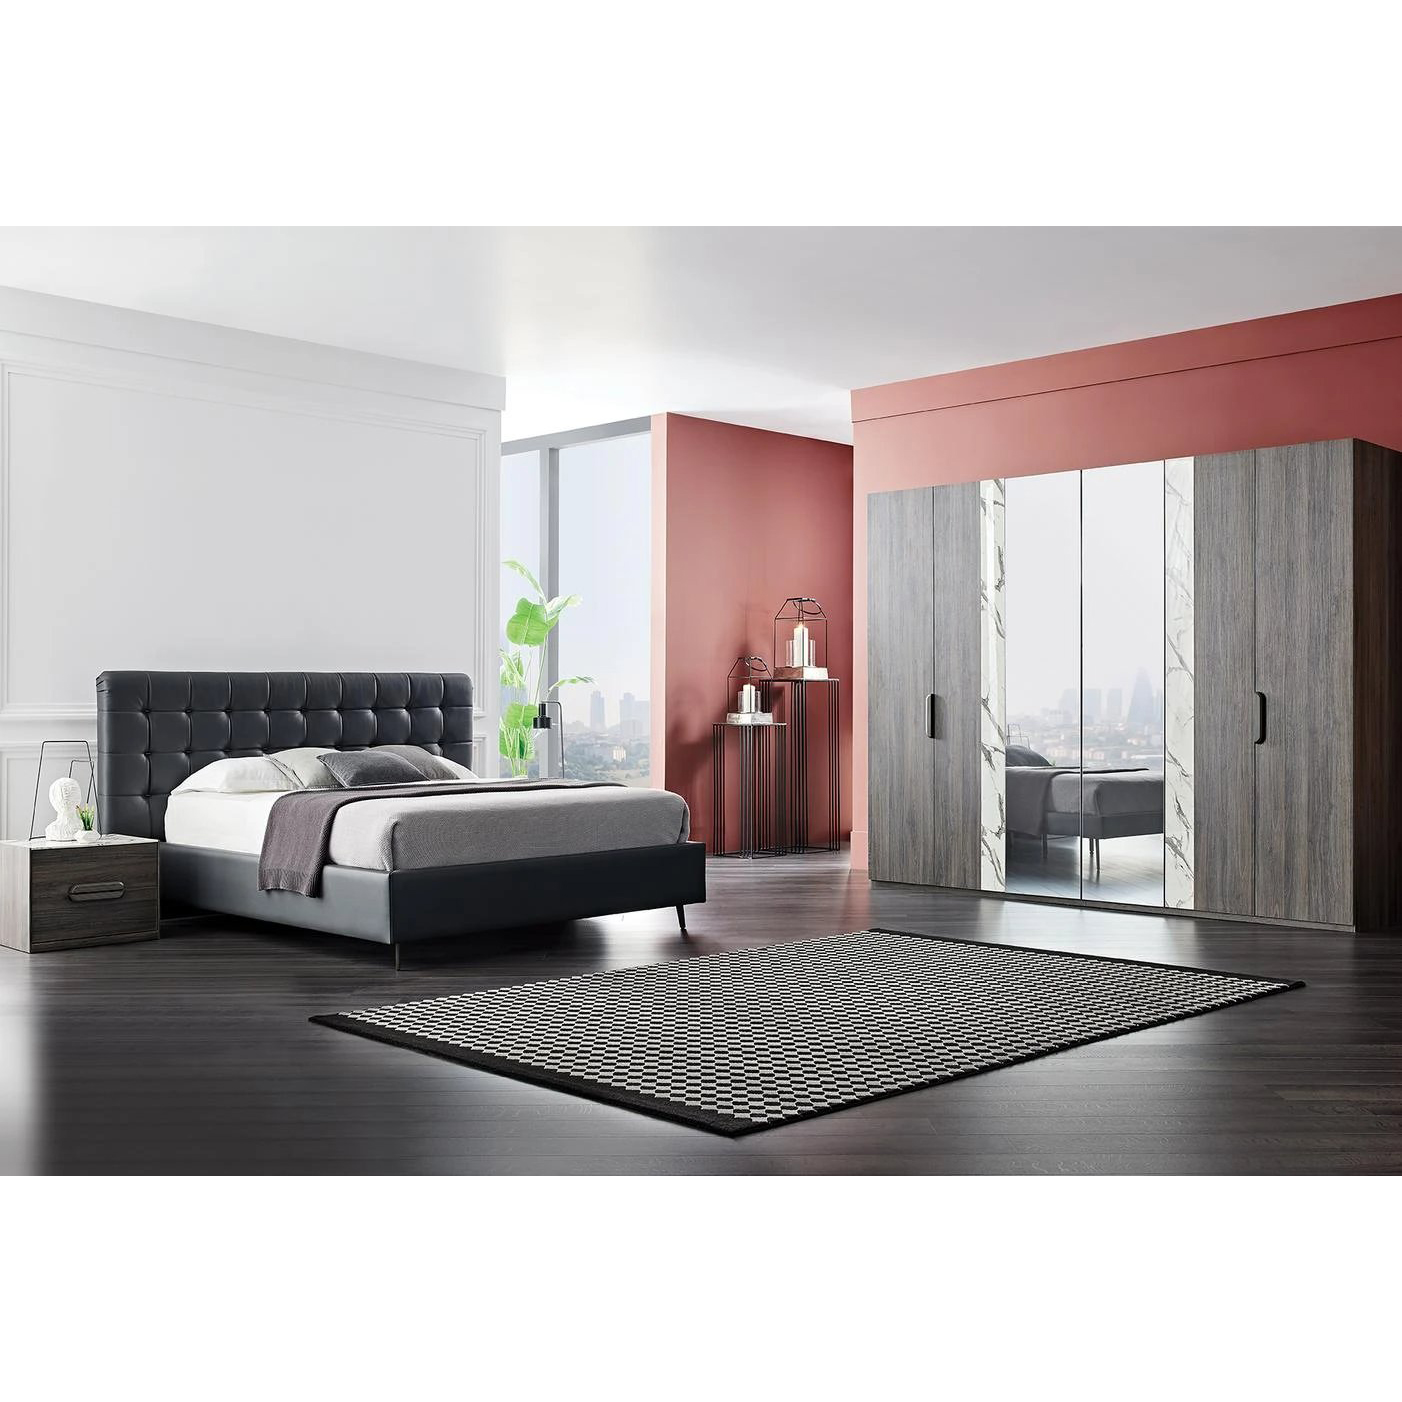 Кровать Enza Home Giorno, двуспальная, с подъемным механизмом, 180х200 см